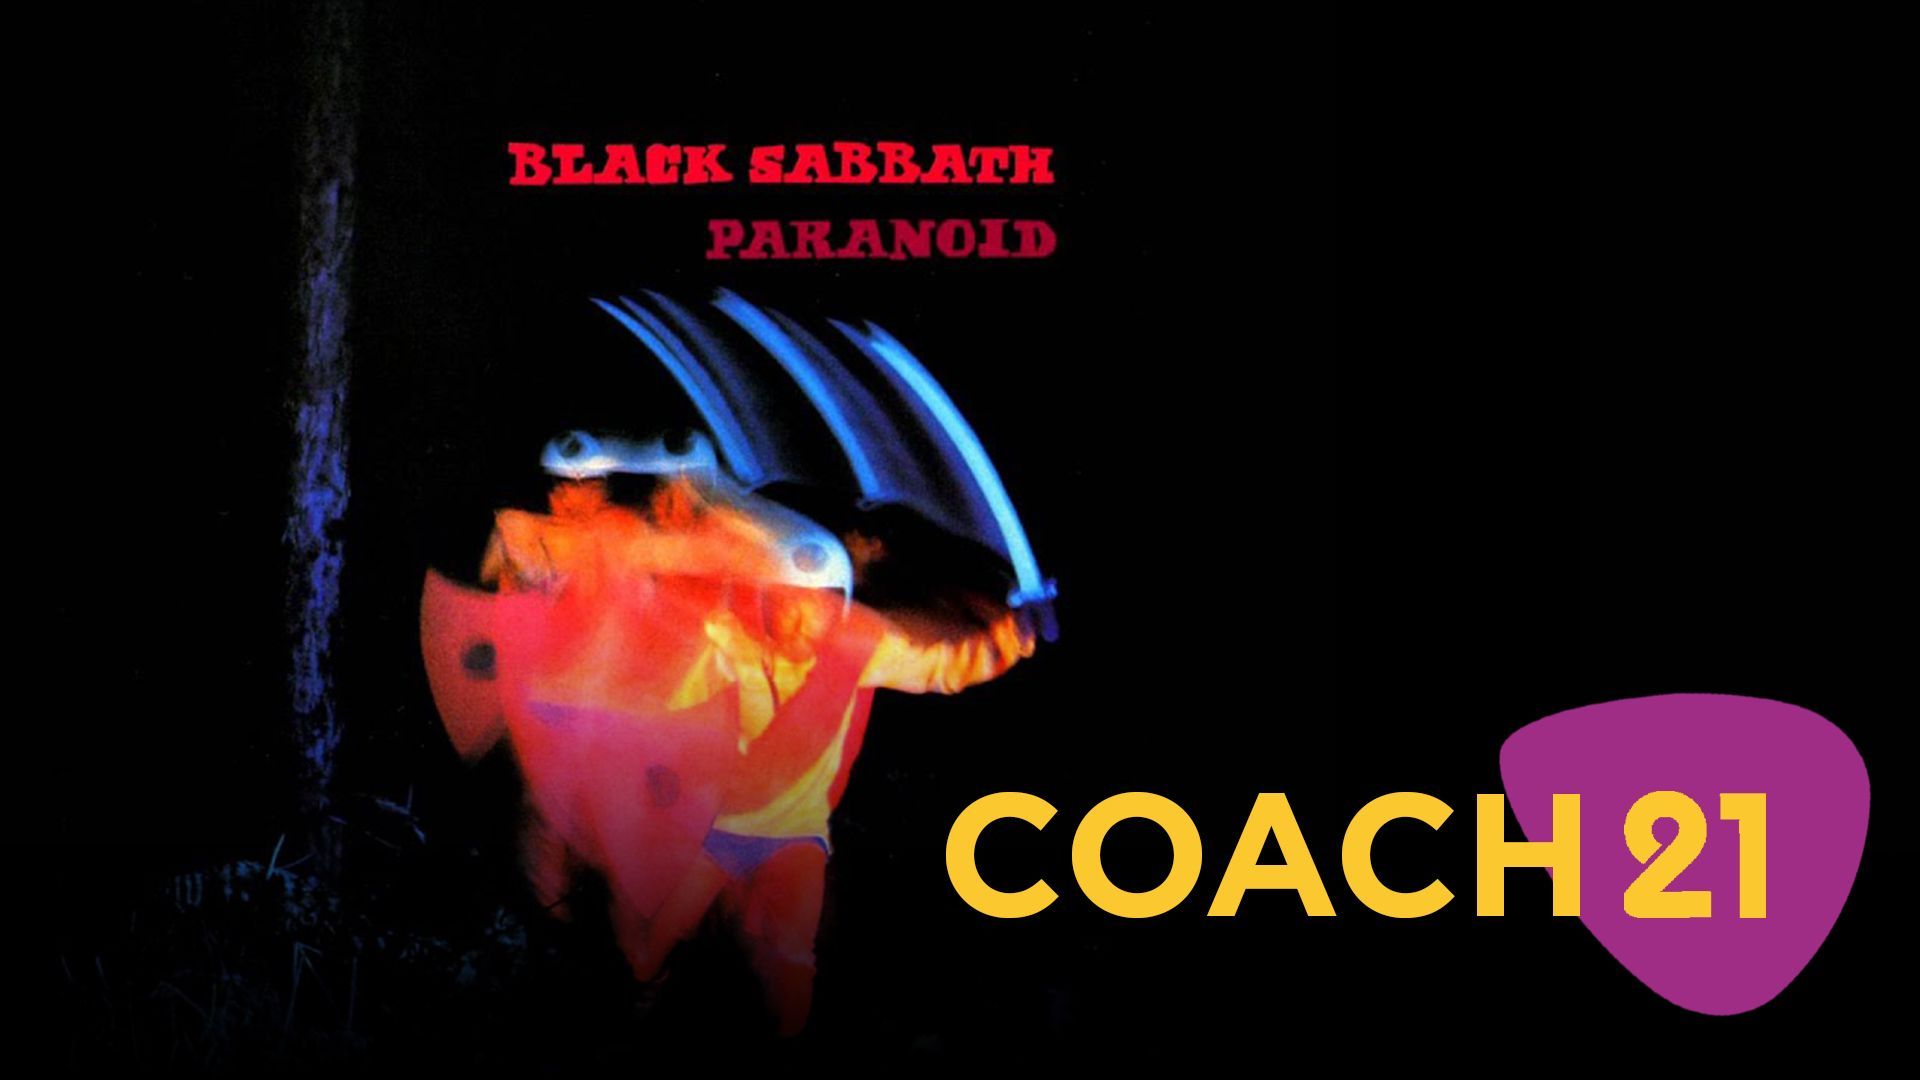 [Coach 21] Black Sabbath - Paranoid